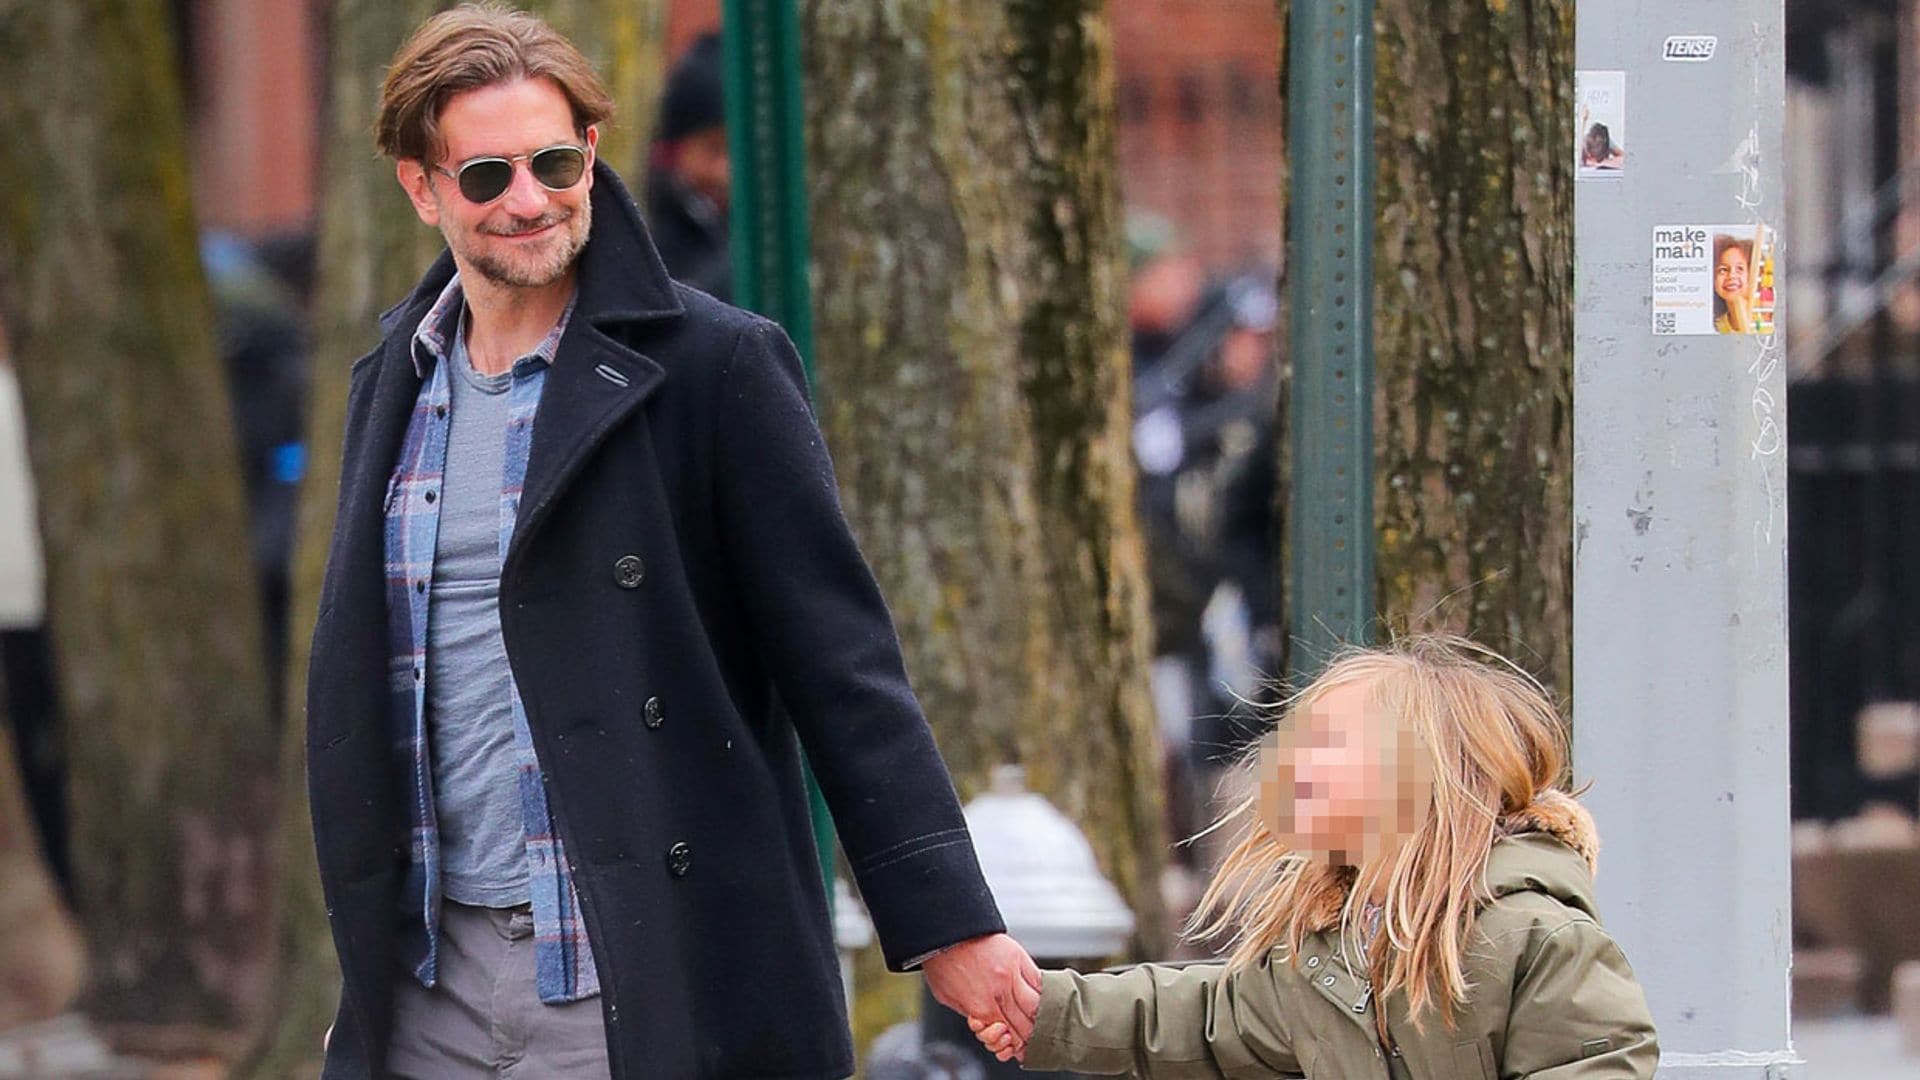 ¡La sonrisa le delata! Bradley Cooper disfruta de un animado paseo por Nueva York junto a su hija Lea